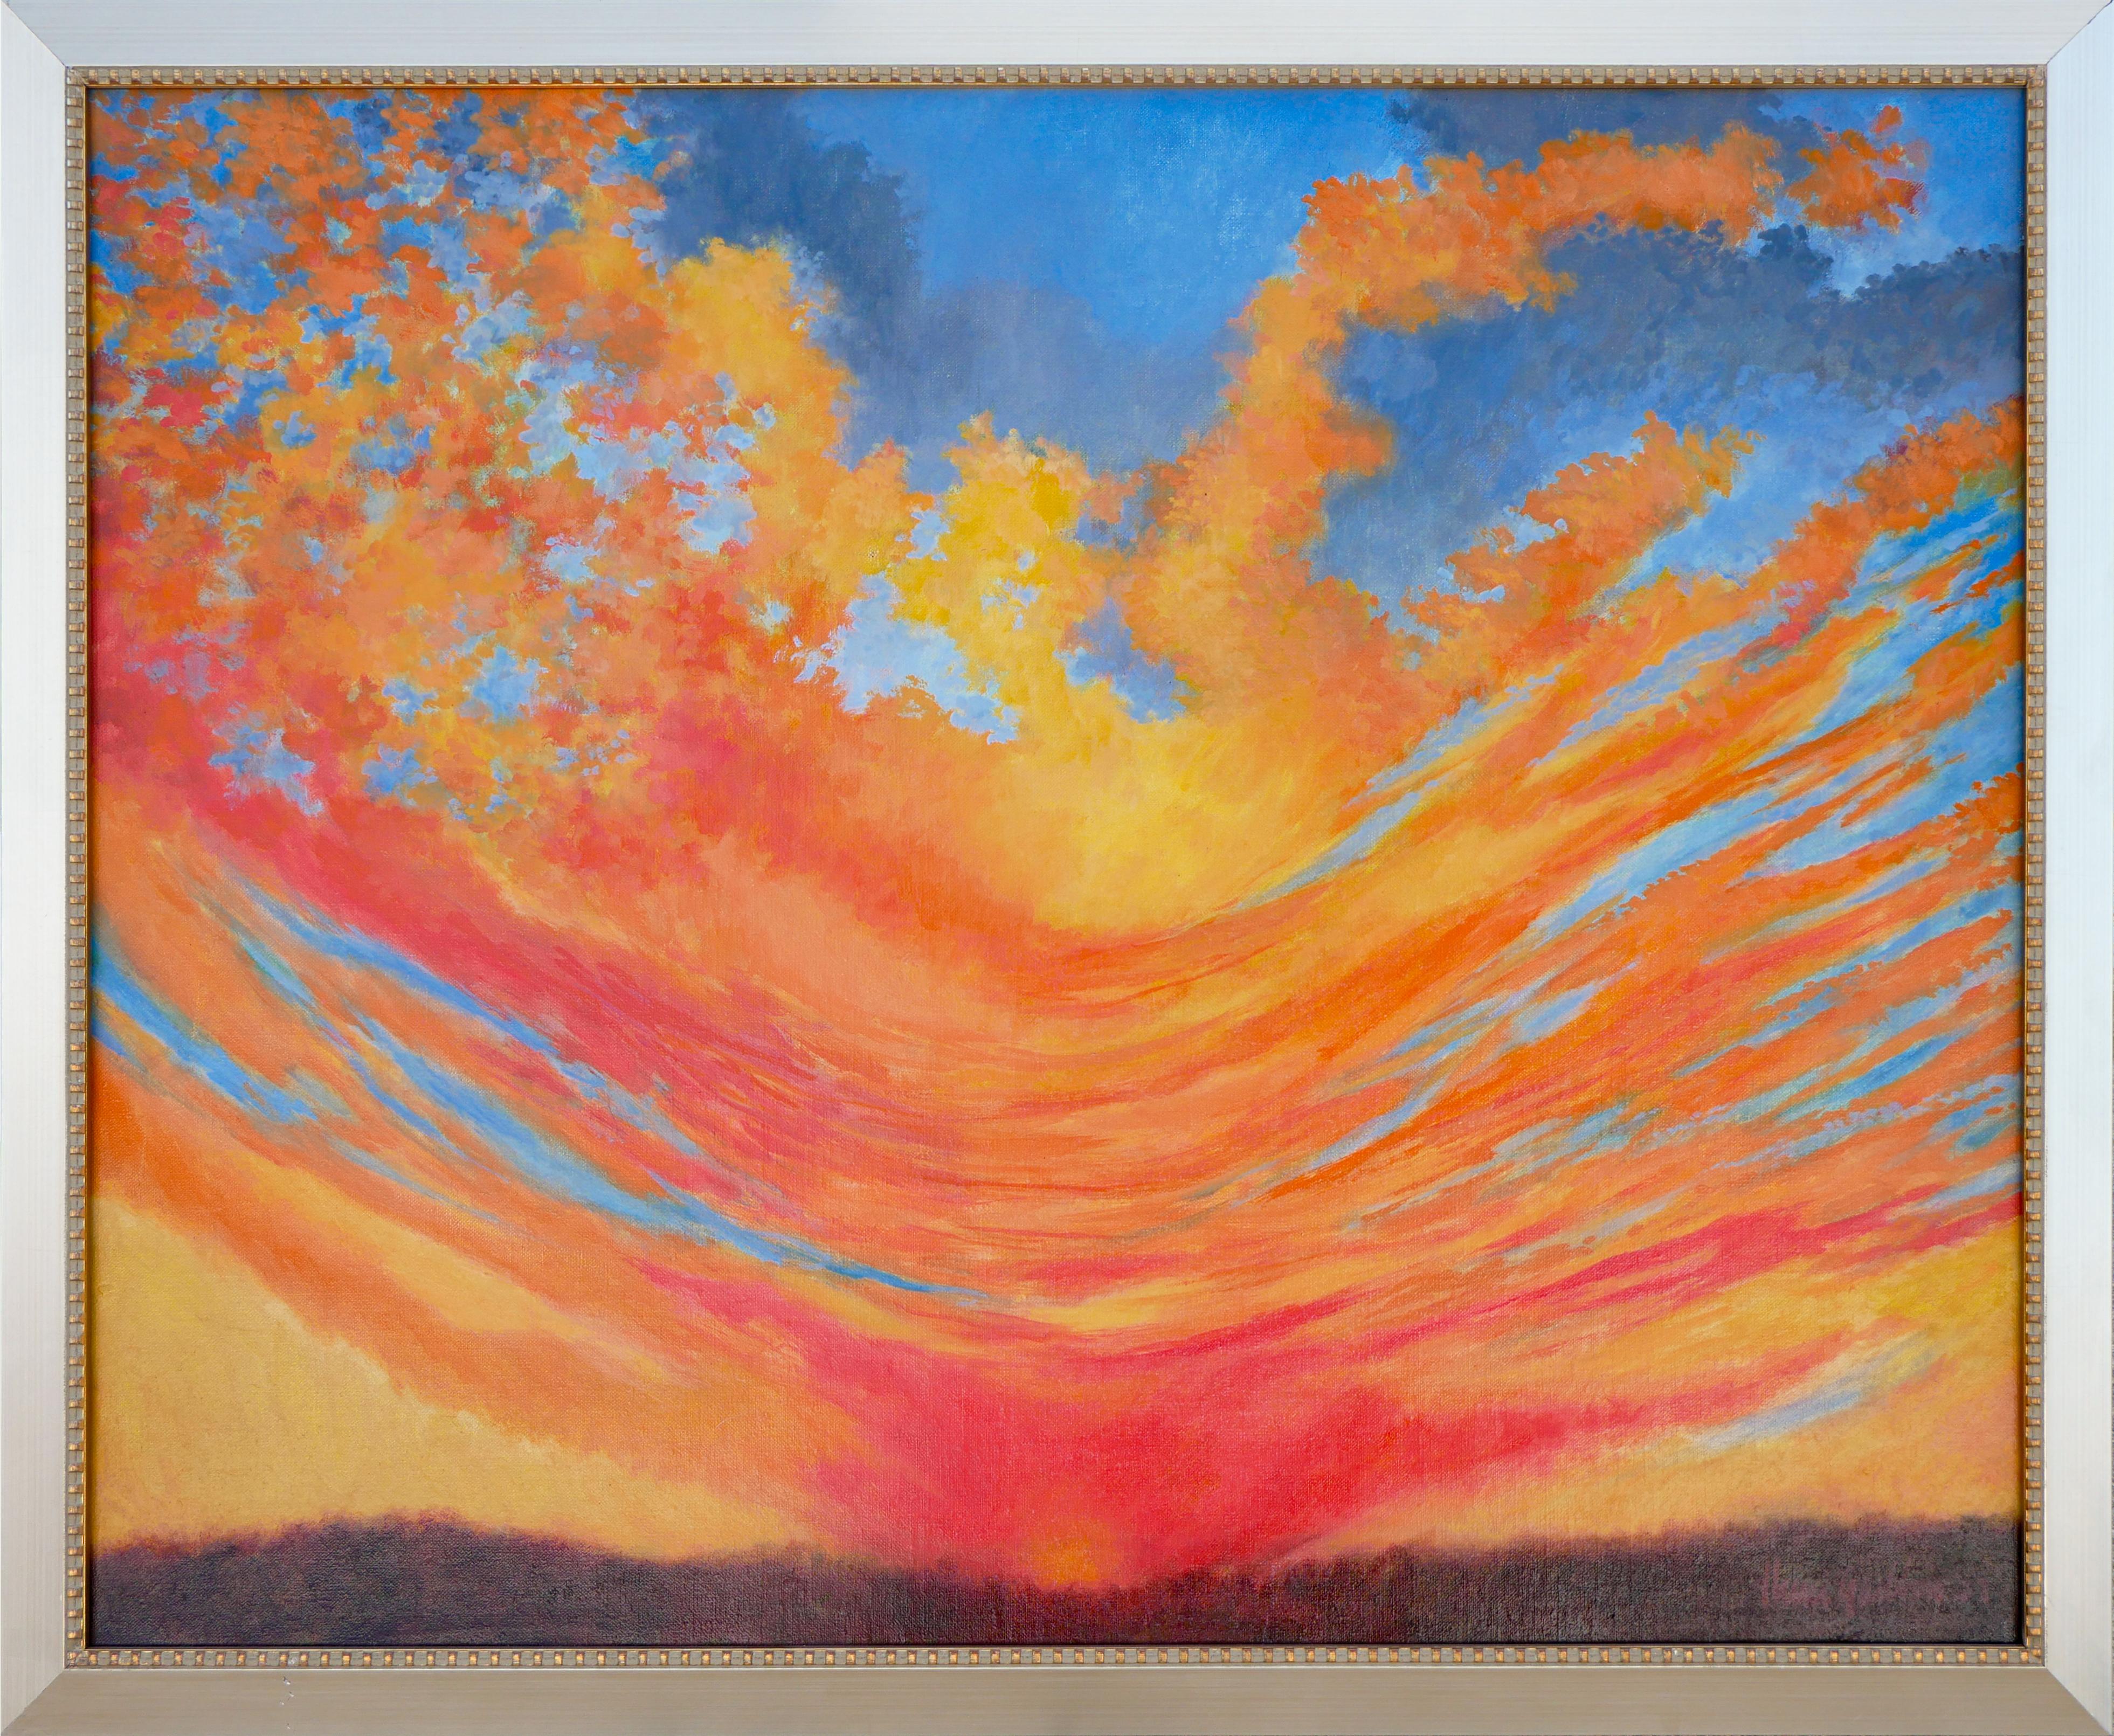 Abstrakt-expressionistische Sonnenuntergang-Landschaft in Blau, Orange und Gelb